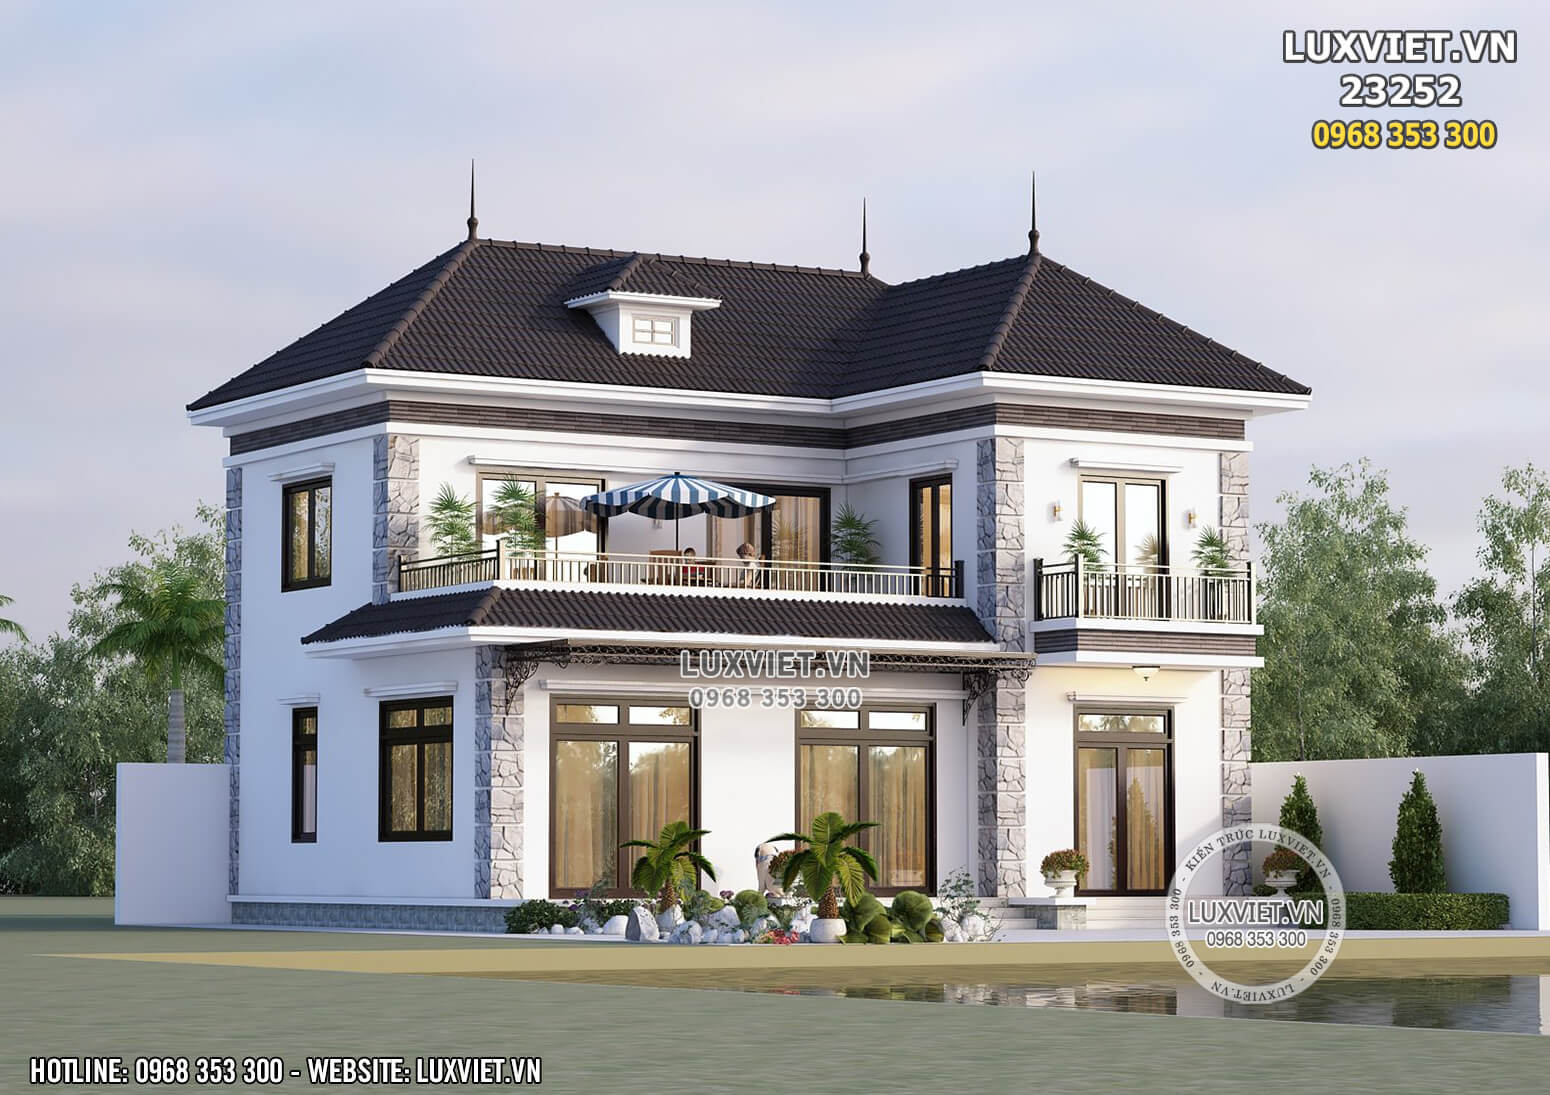 Mẫu thiết kế nhà 2 tầng mái nhật đẹp đẳng cấp tại Thái Bình – LV 23252